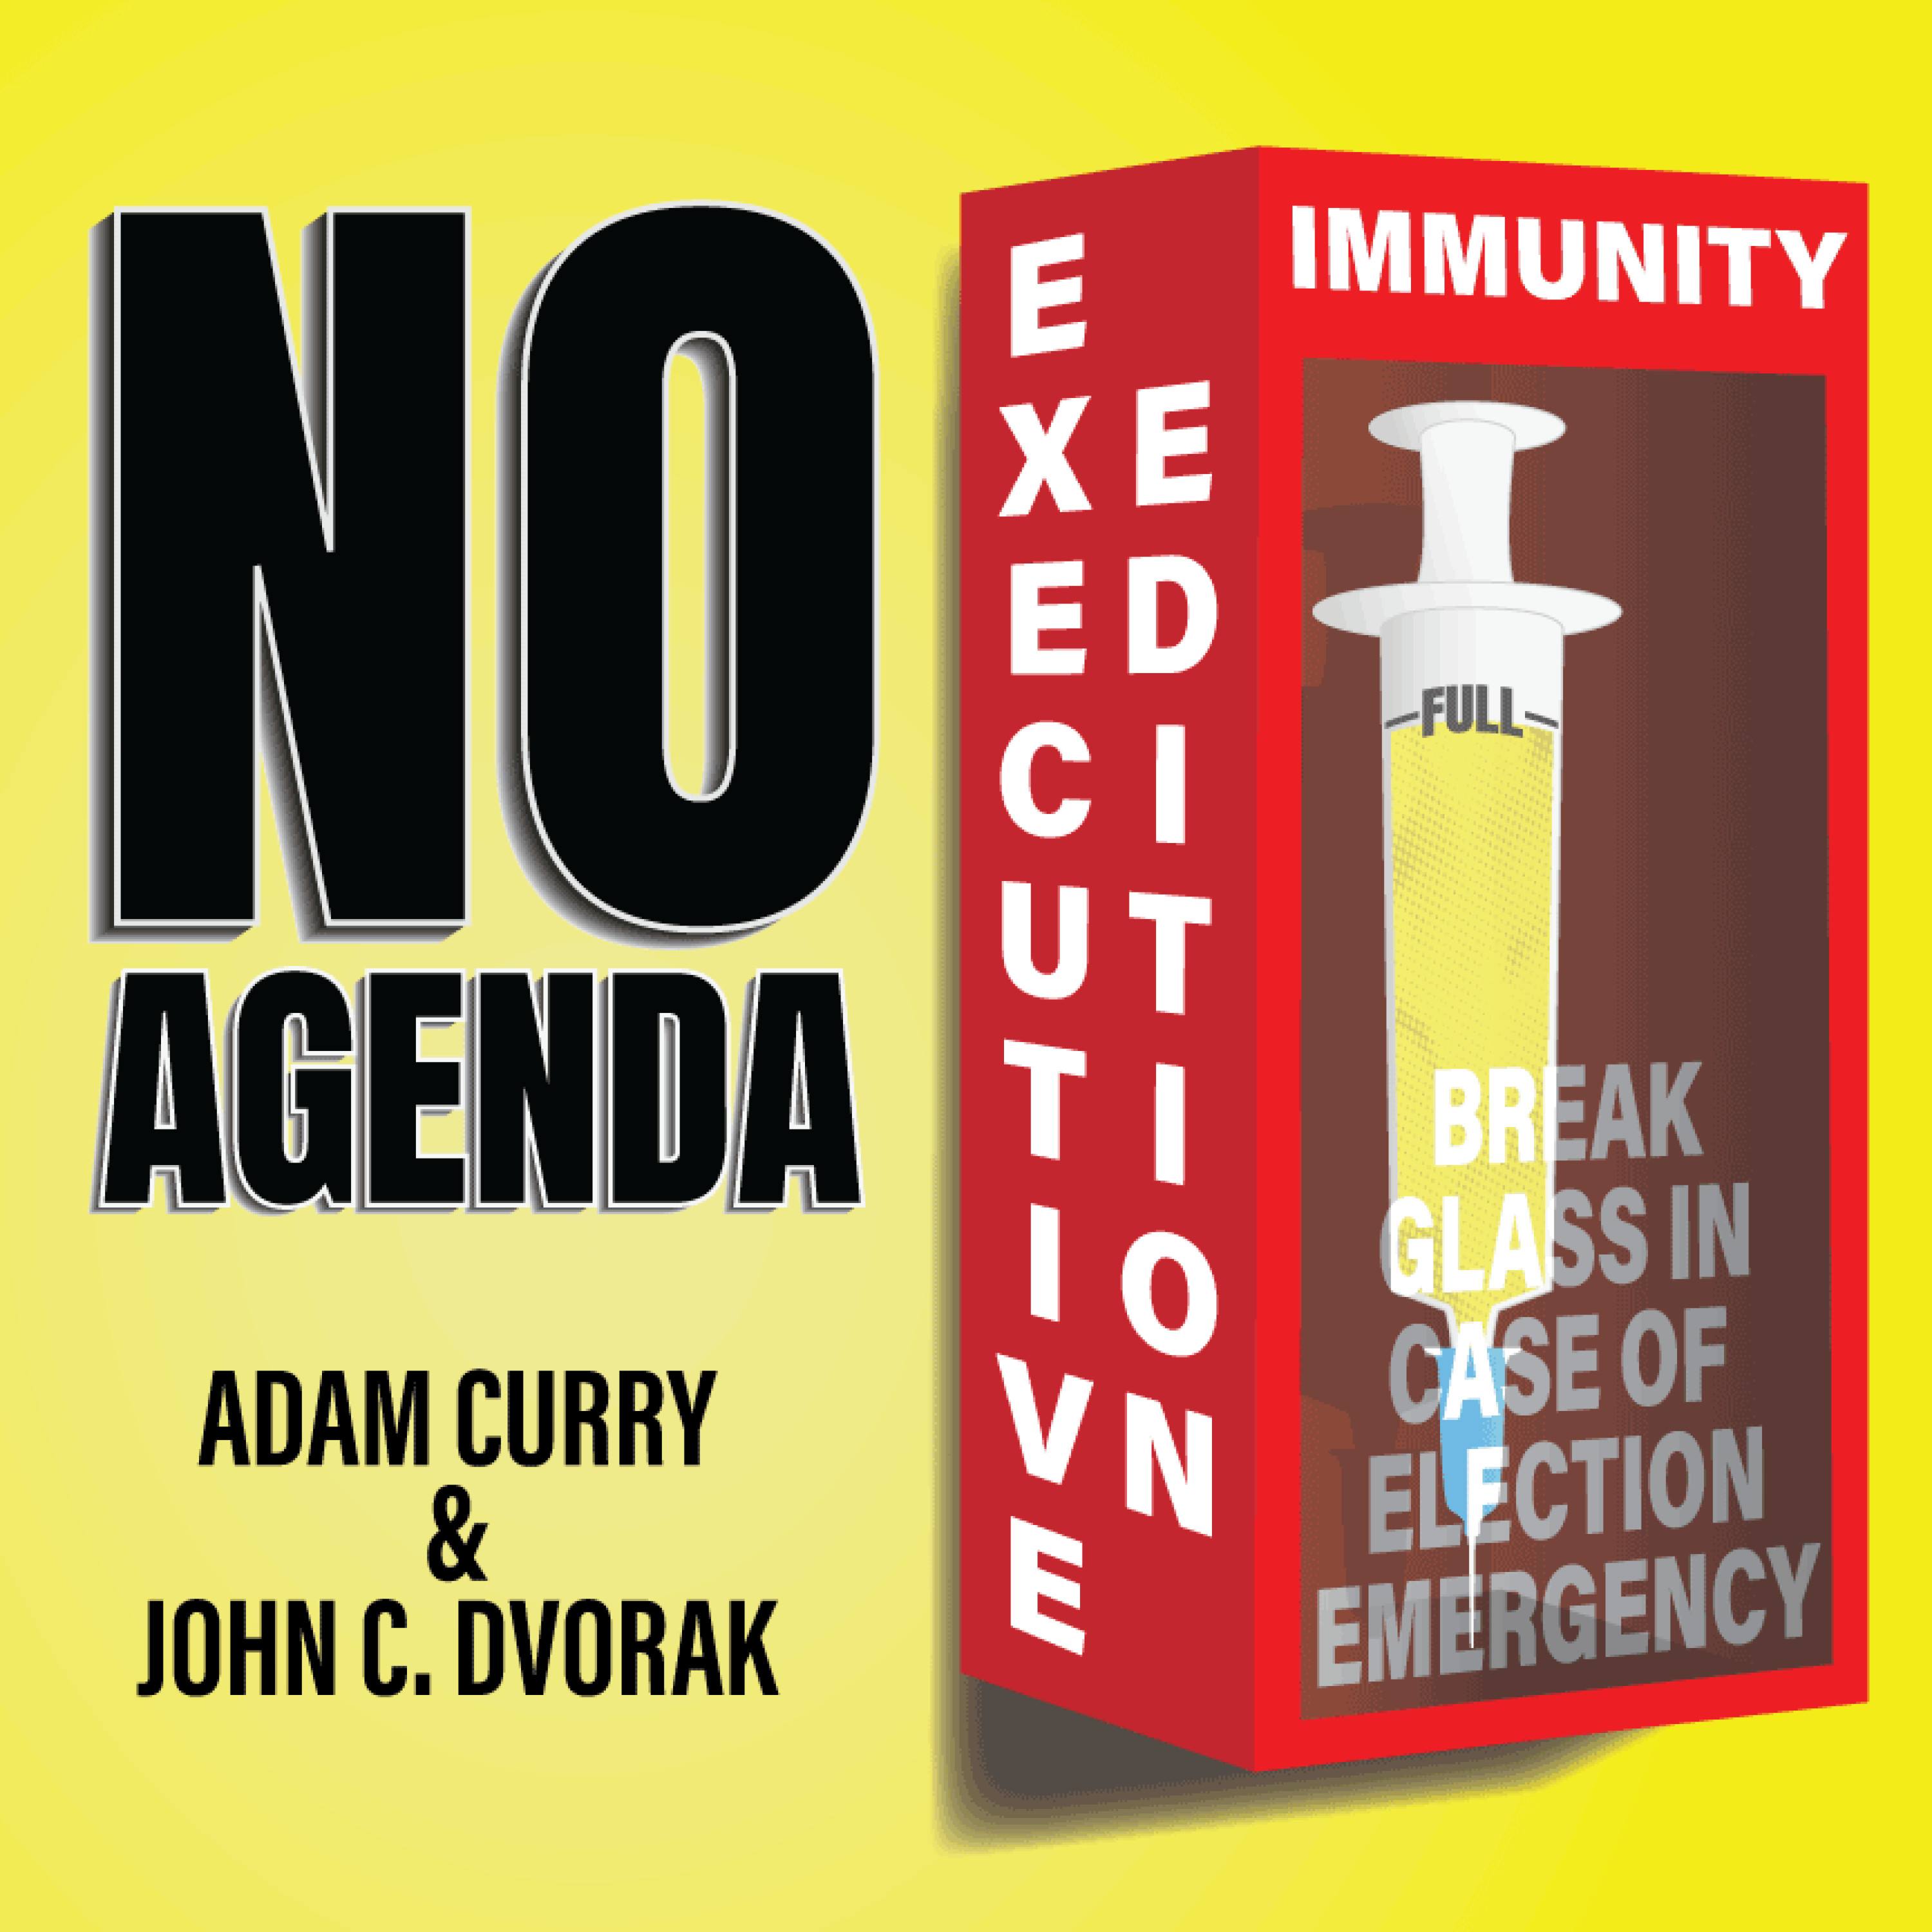 Executive Immunity Emergenccy by Sir Shoug (aka FauxDiddley) for 